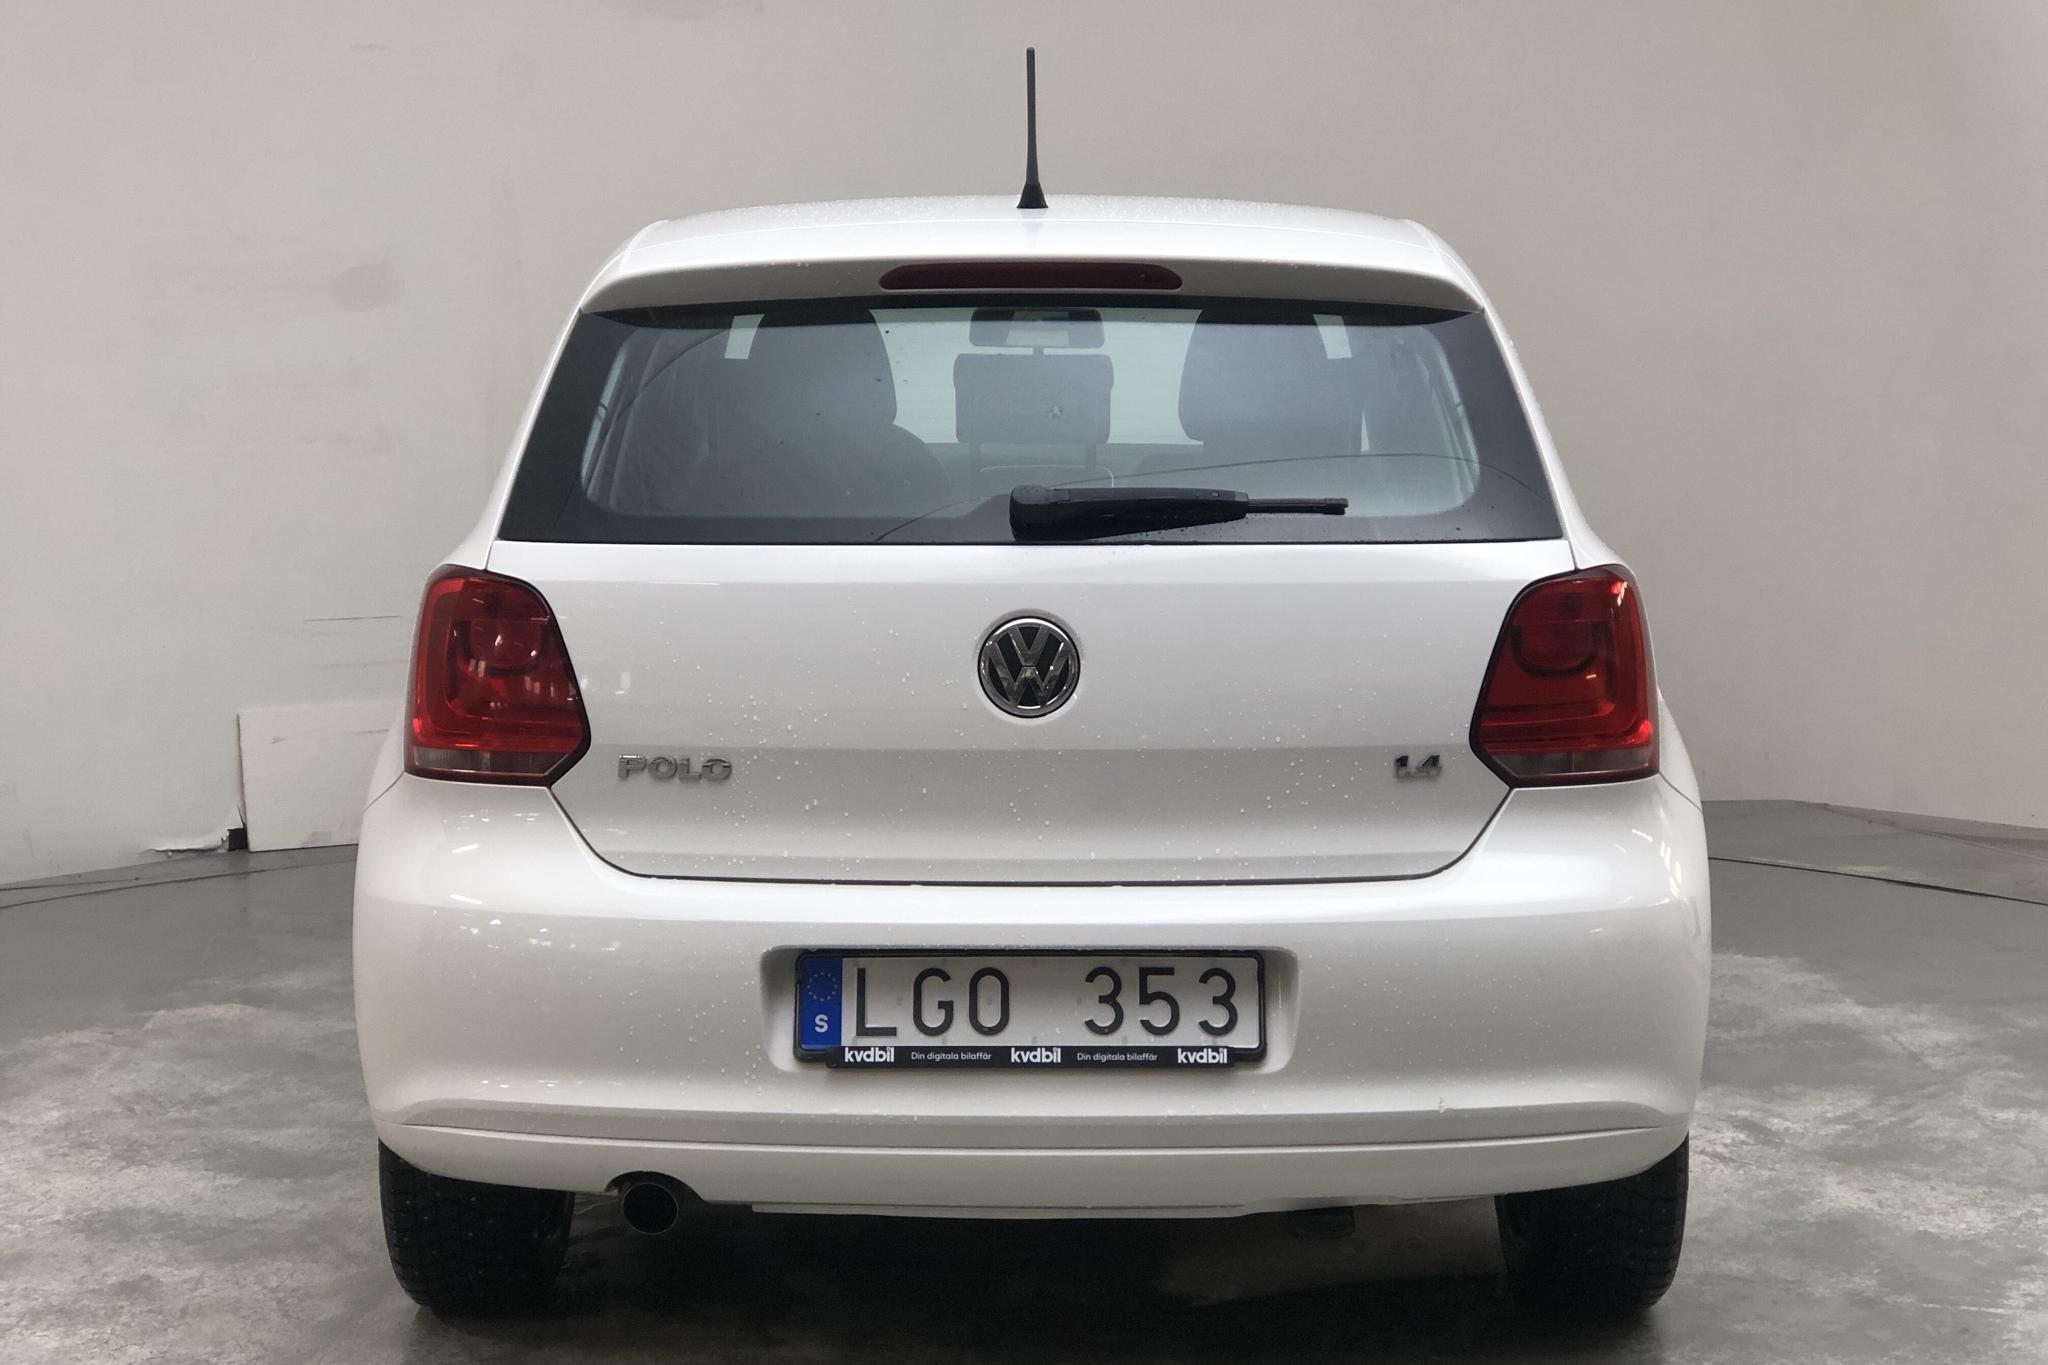 VW Polo 1.4 5dr (85hk) - 15 202 mil - Manuell - vit - 2011